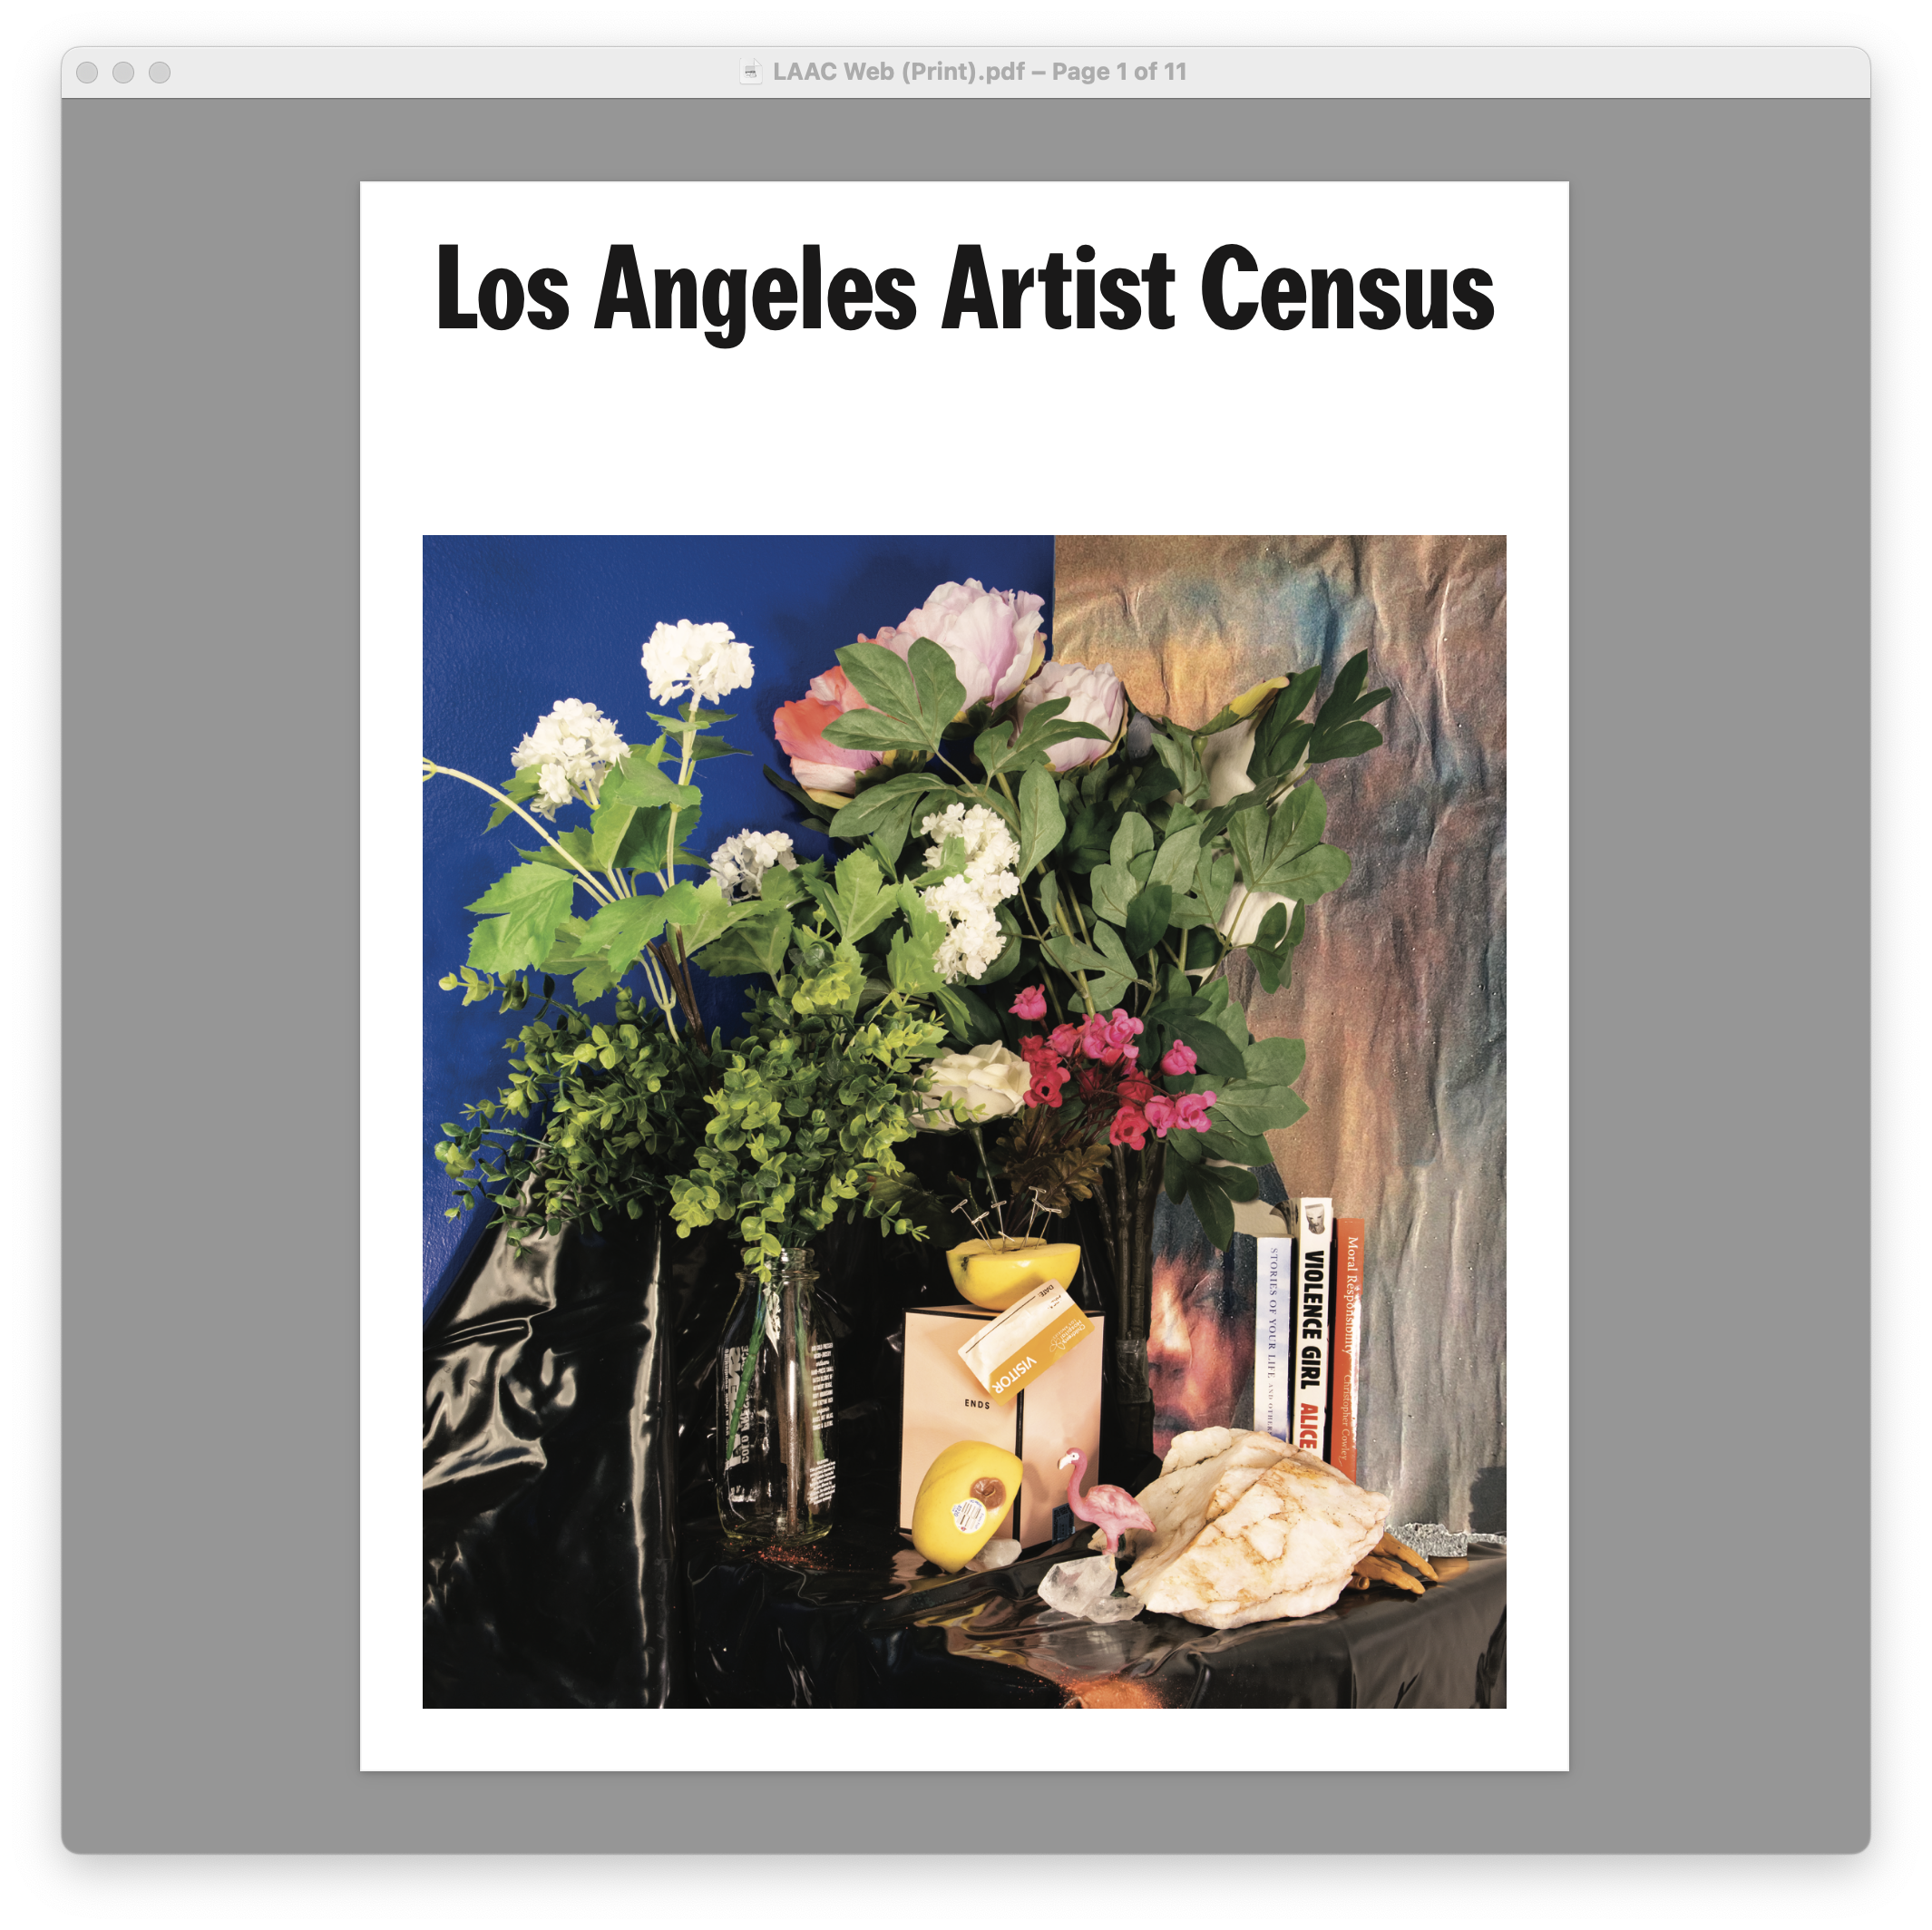 Imagen del PDF de la publicación del censo de artistas de Los Ángeles